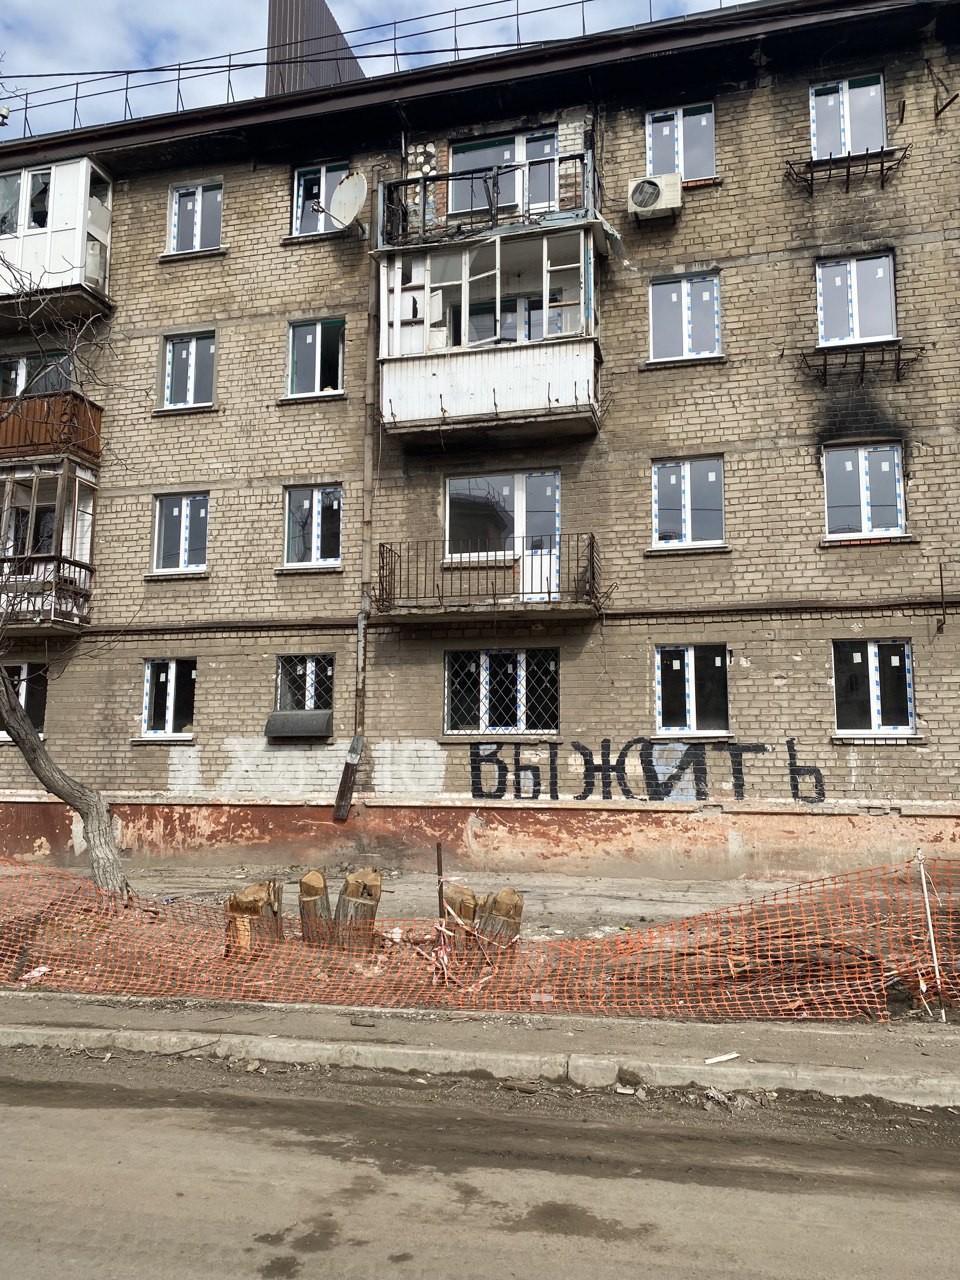 "Eu quero sobreviver", diz pichação em prédio residencial parcialmente destruído em Mariupol — Foto: Ekaterina Diachkova